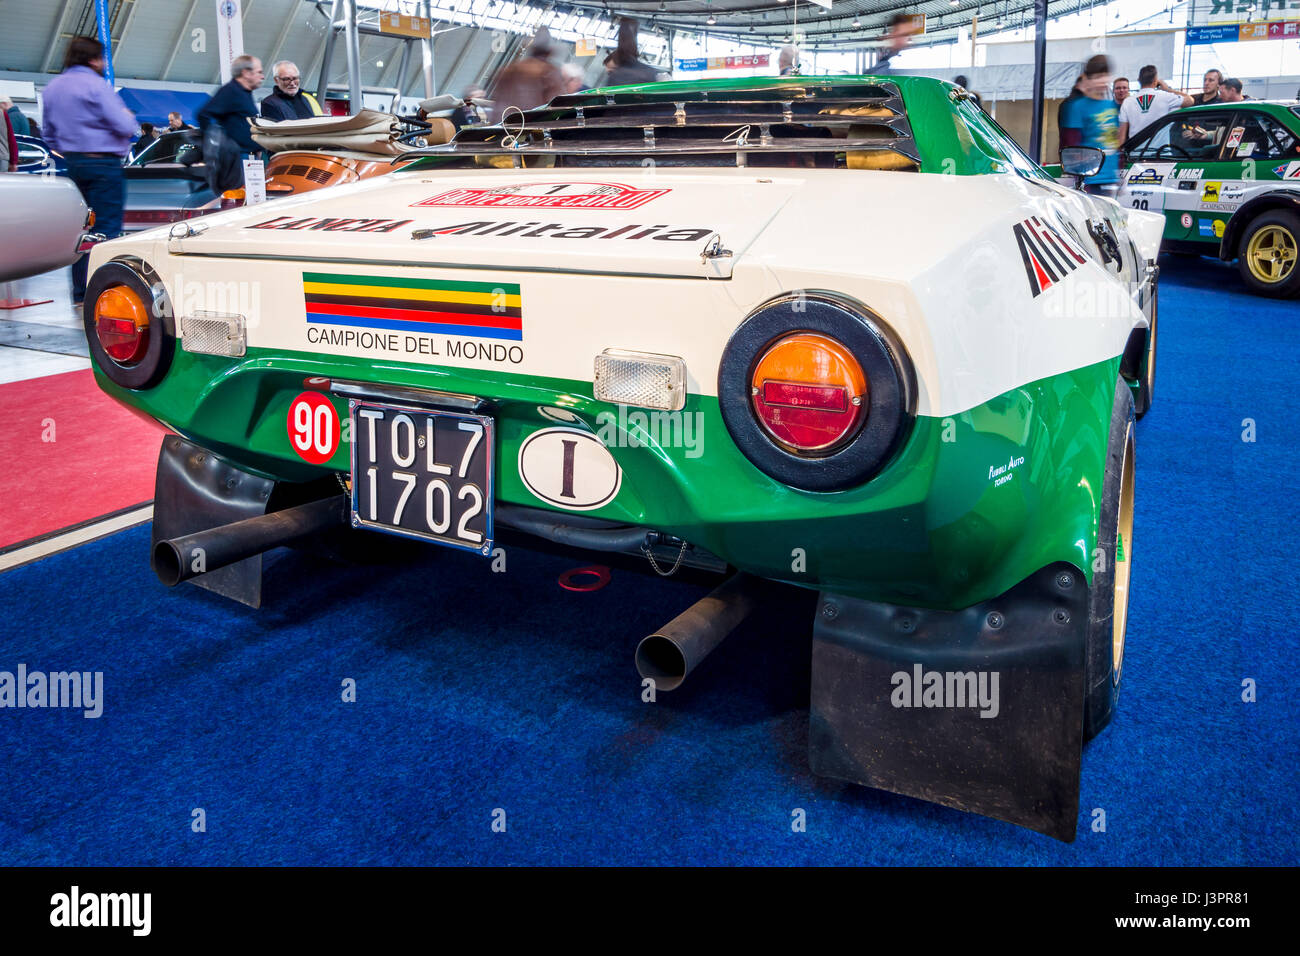 STUTTGART, ALLEMAGNE - Mars 03, 2017 : voiture de rallye et de sport Lancia Stratos HF (Tipo 829), 1975. Vue arrière. Plus grand d'Europe Exposition de voitures classiques 'RETRO' classiques Banque D'Images